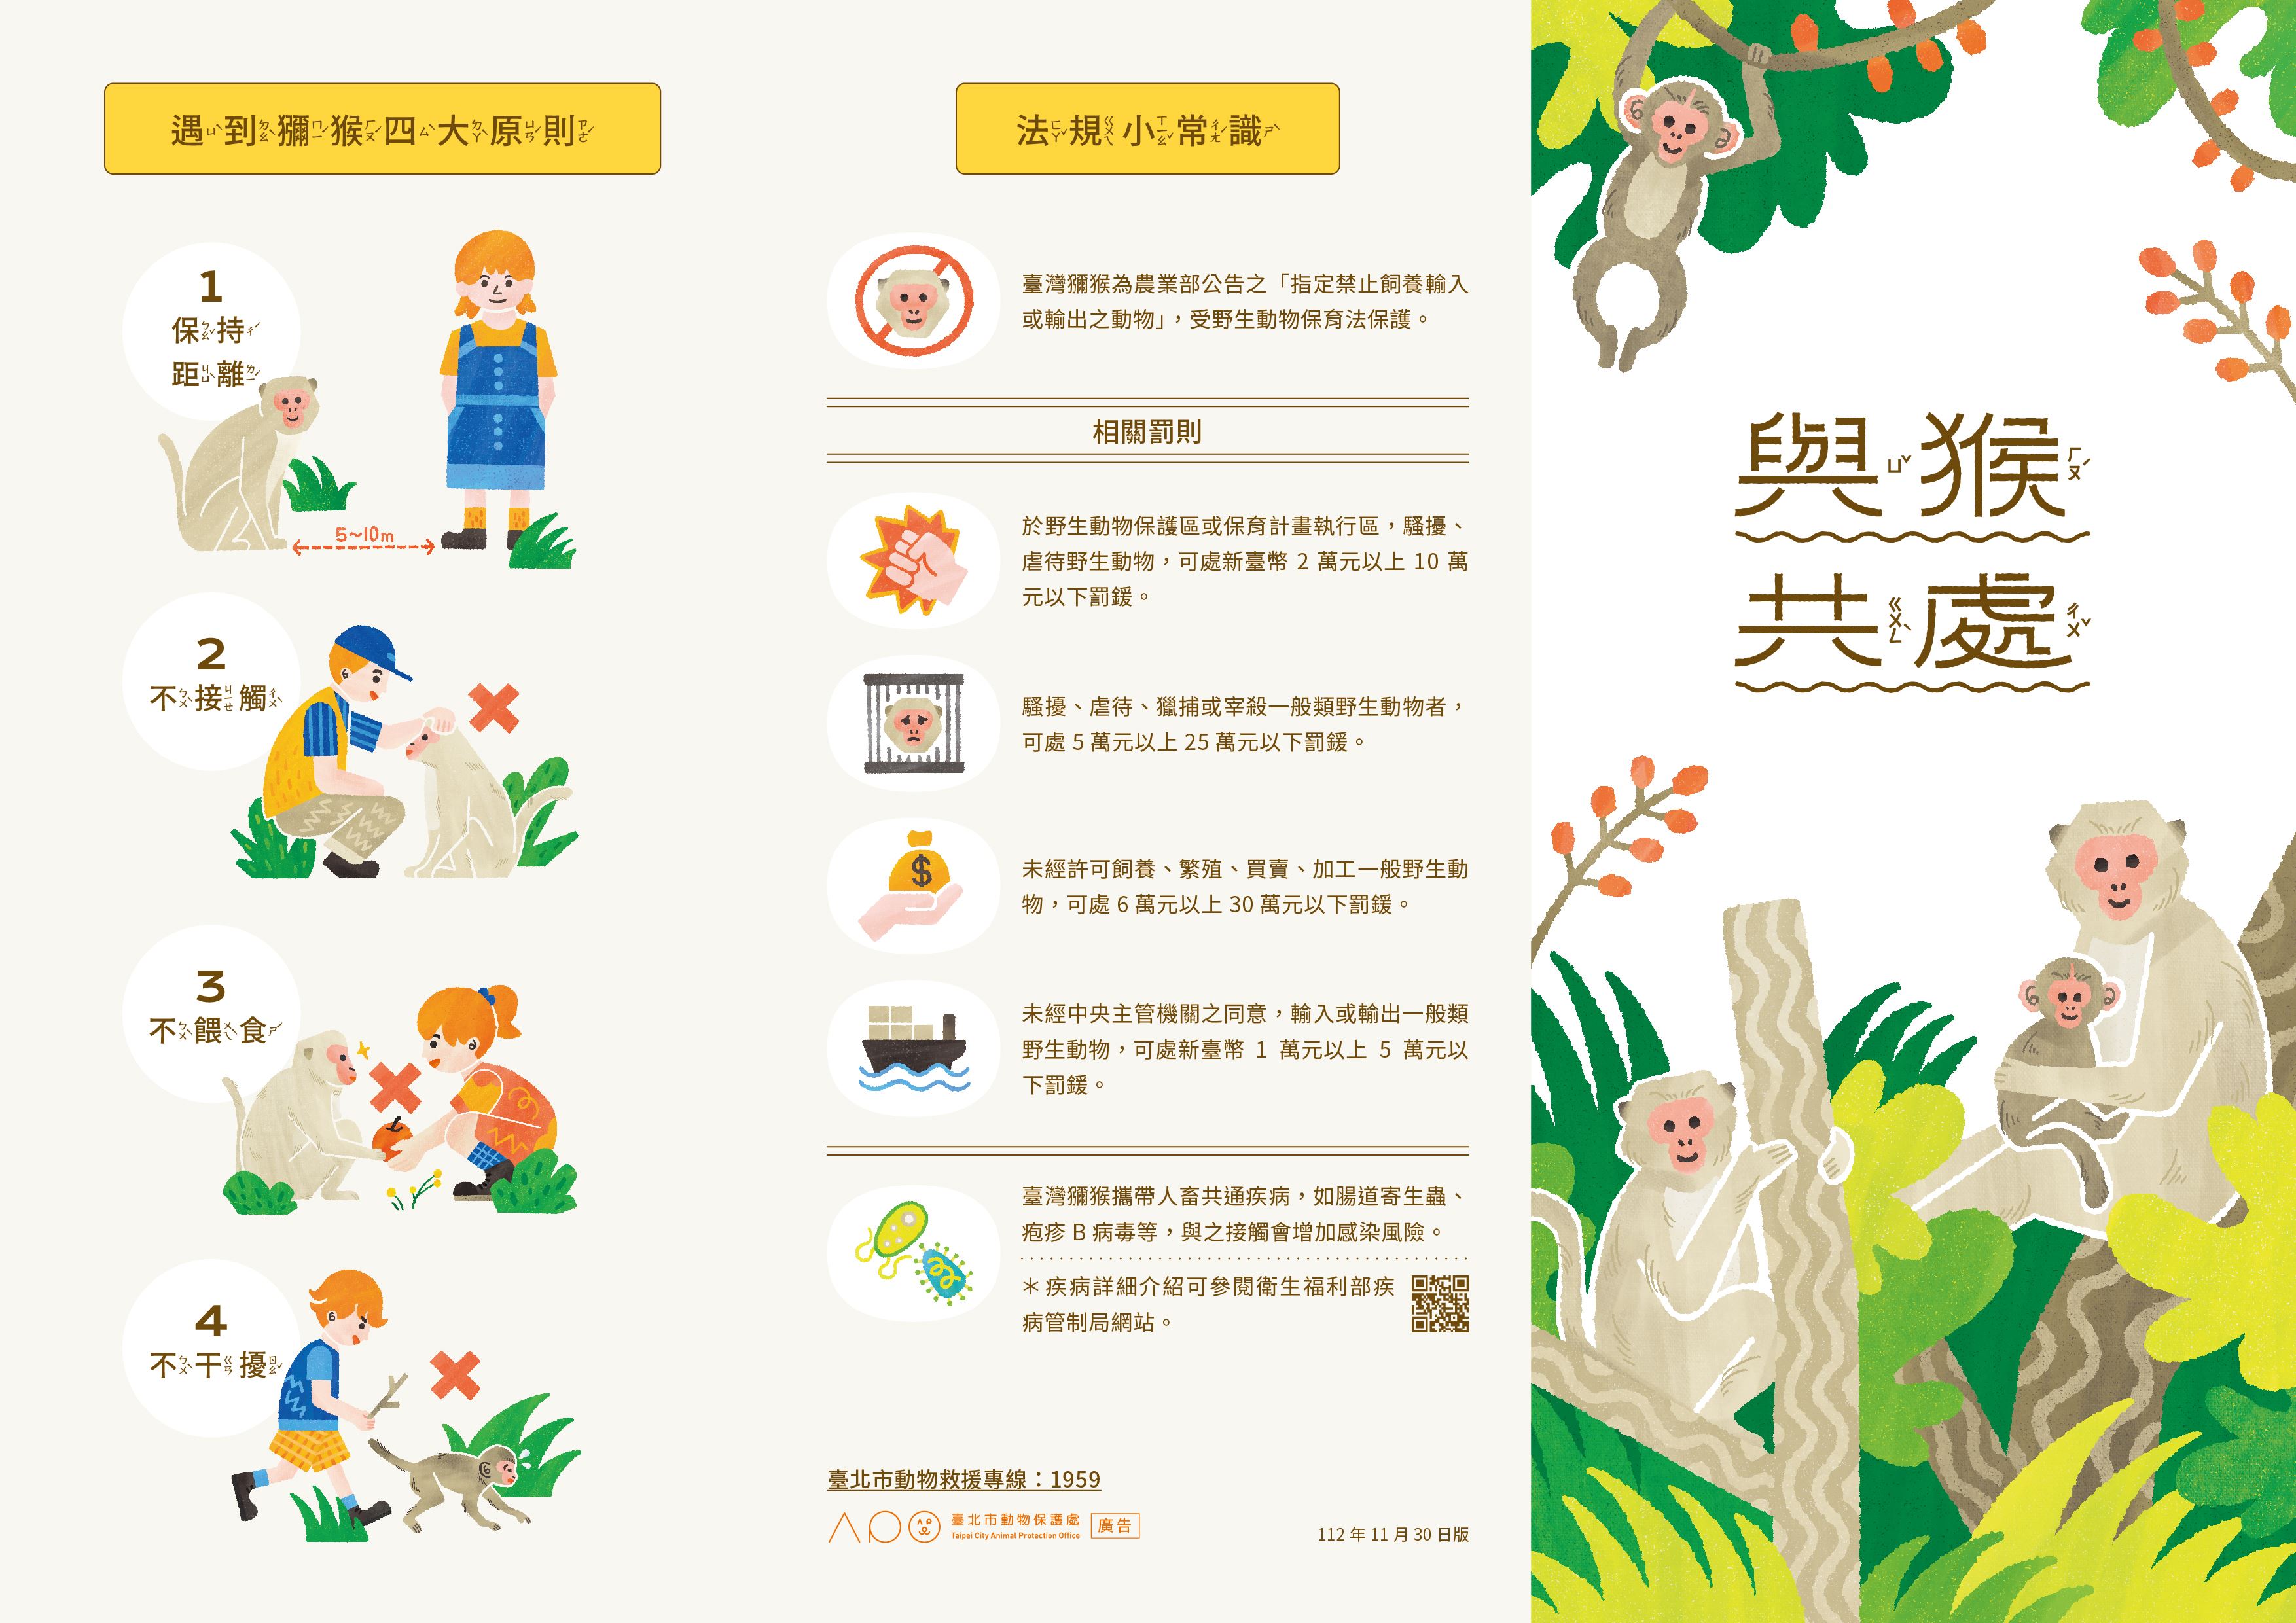 臺北市動物保護處規劃「與猴共處」摺頁